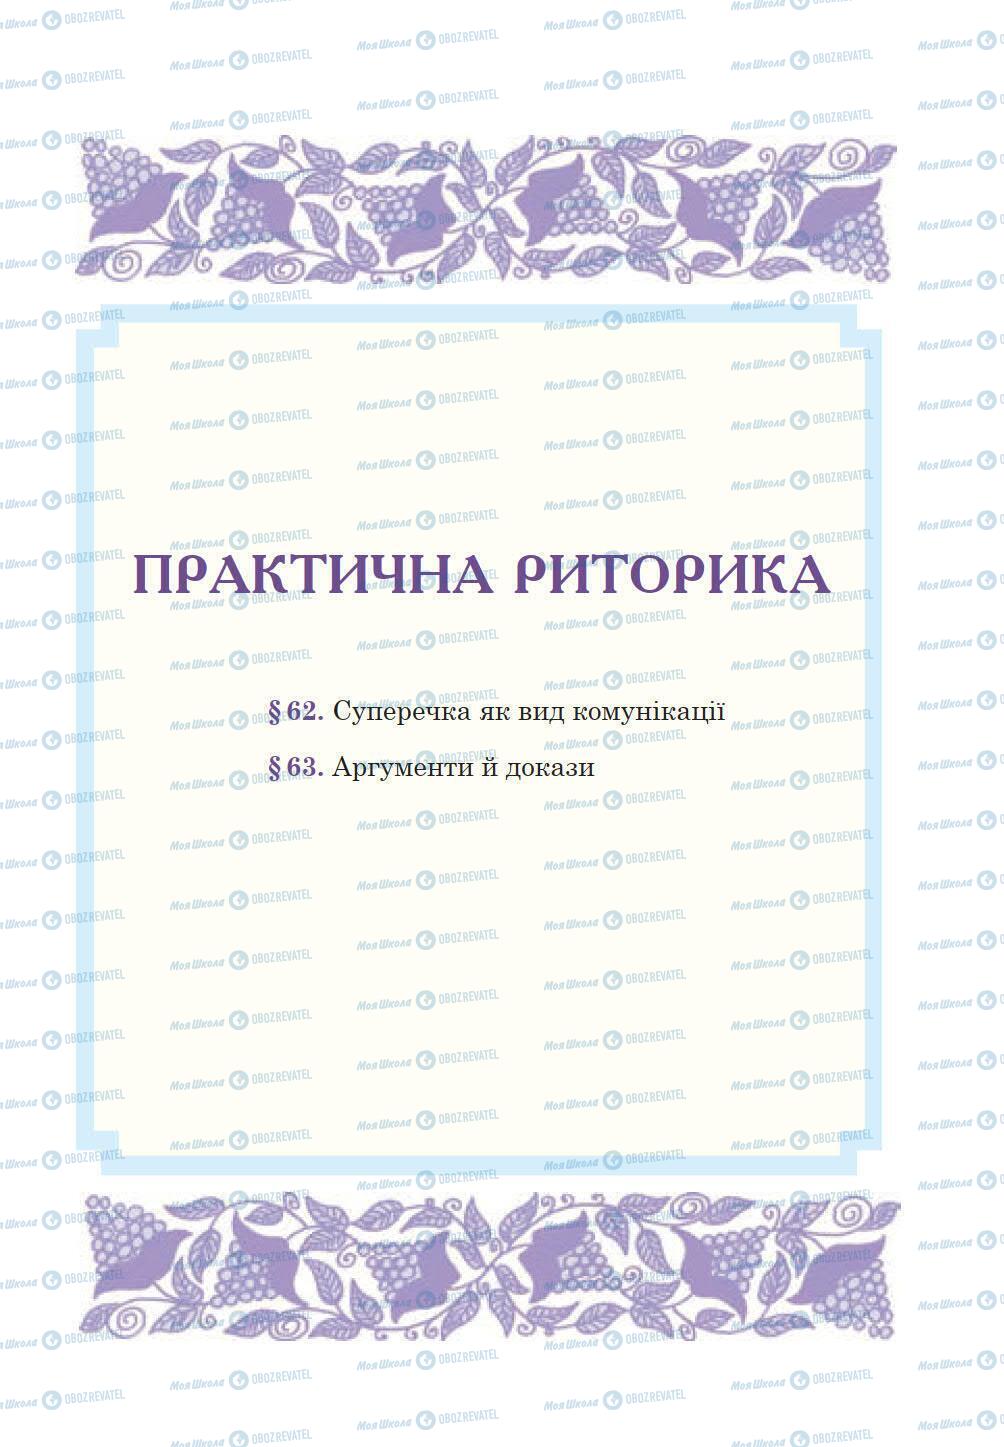 Підручники Українська мова 10 клас сторінка 197